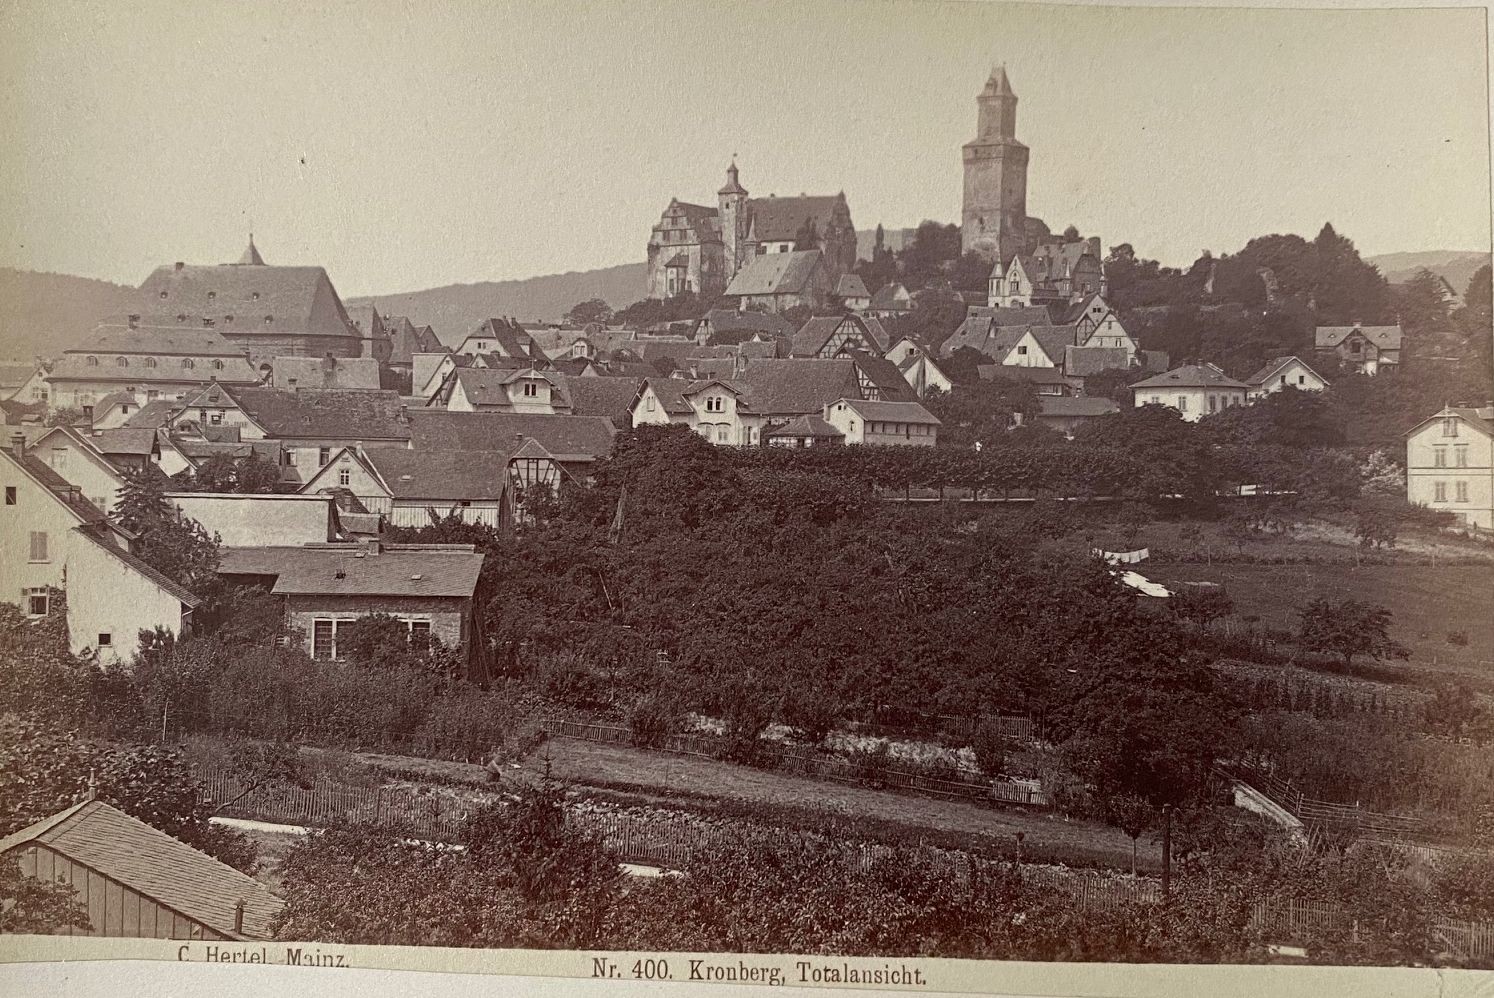 Fotografie, Carl Hertel No. 400, Kronberg Totalansicht, ca. 1885 (Taunus-Rhein-Main - Regionalgeschichtliche Sammlung Dr. Stefan Naas CC BY-NC-SA)